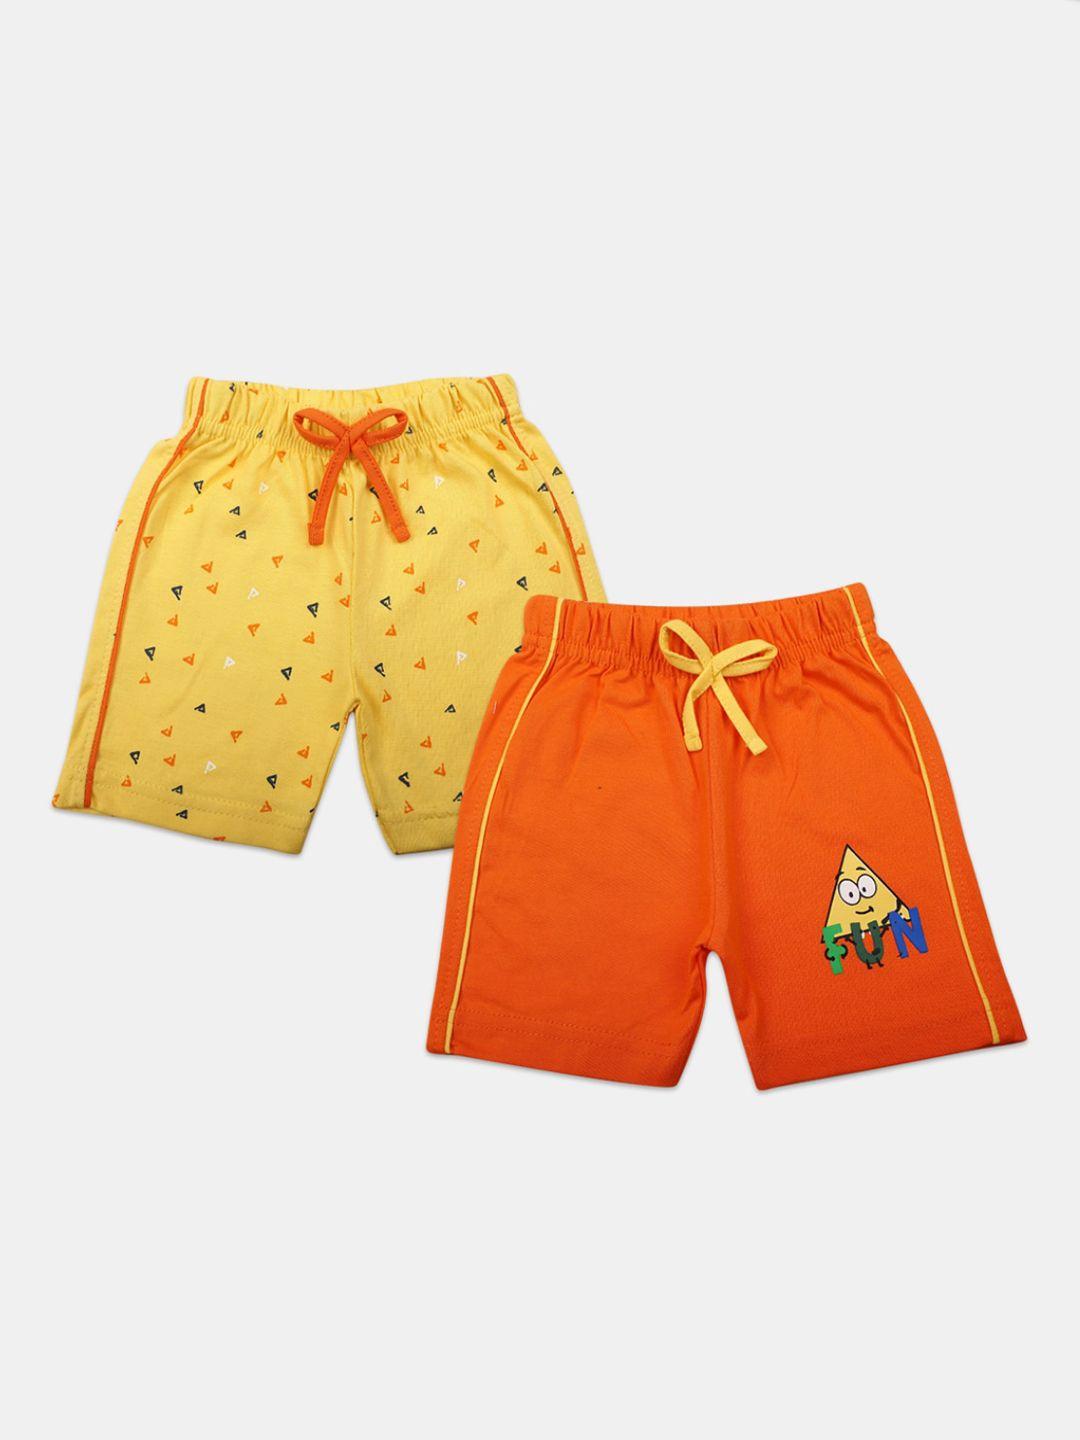 v-mart-infant-kids-pack-of-2-printed-shorts